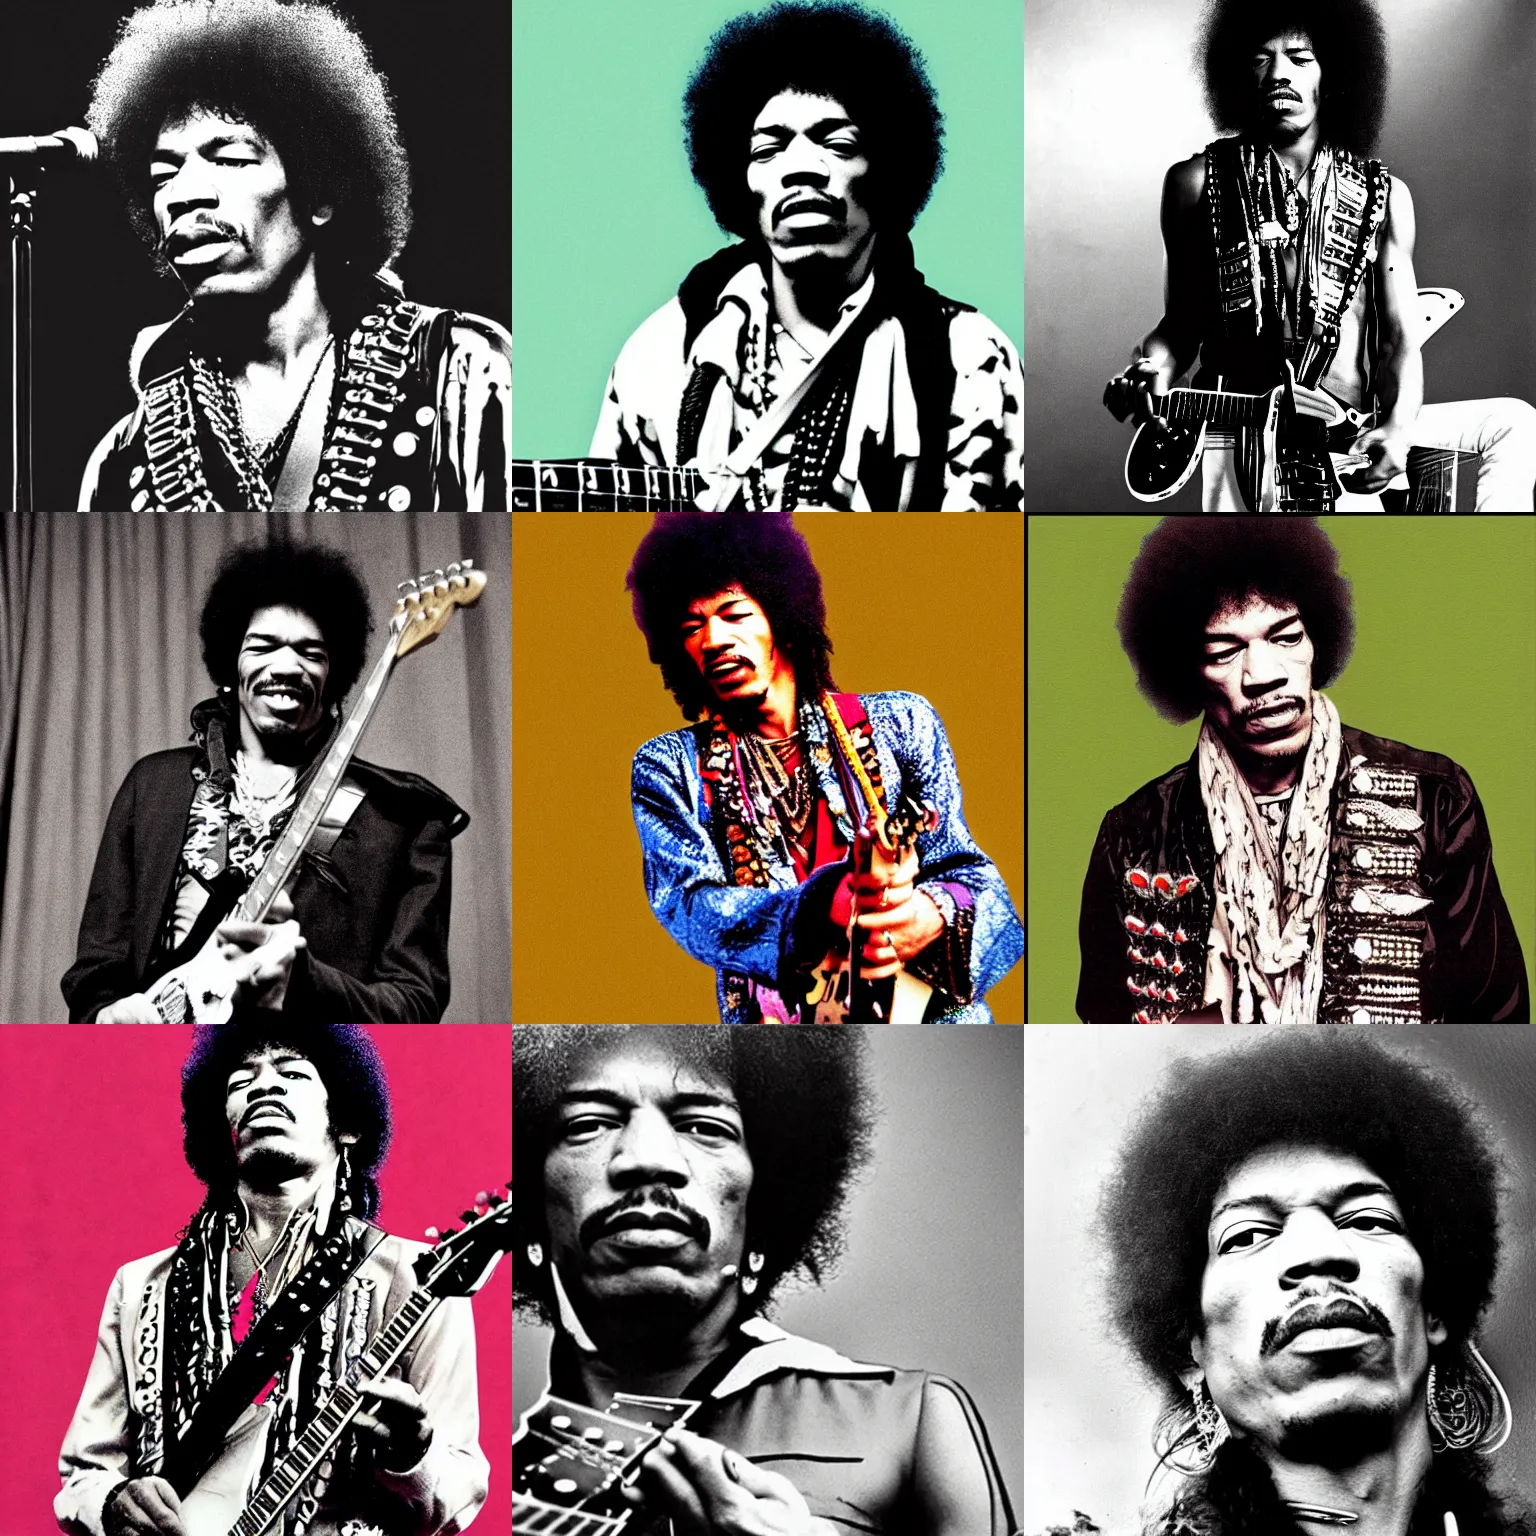 Prompt: Jimi Hendrix